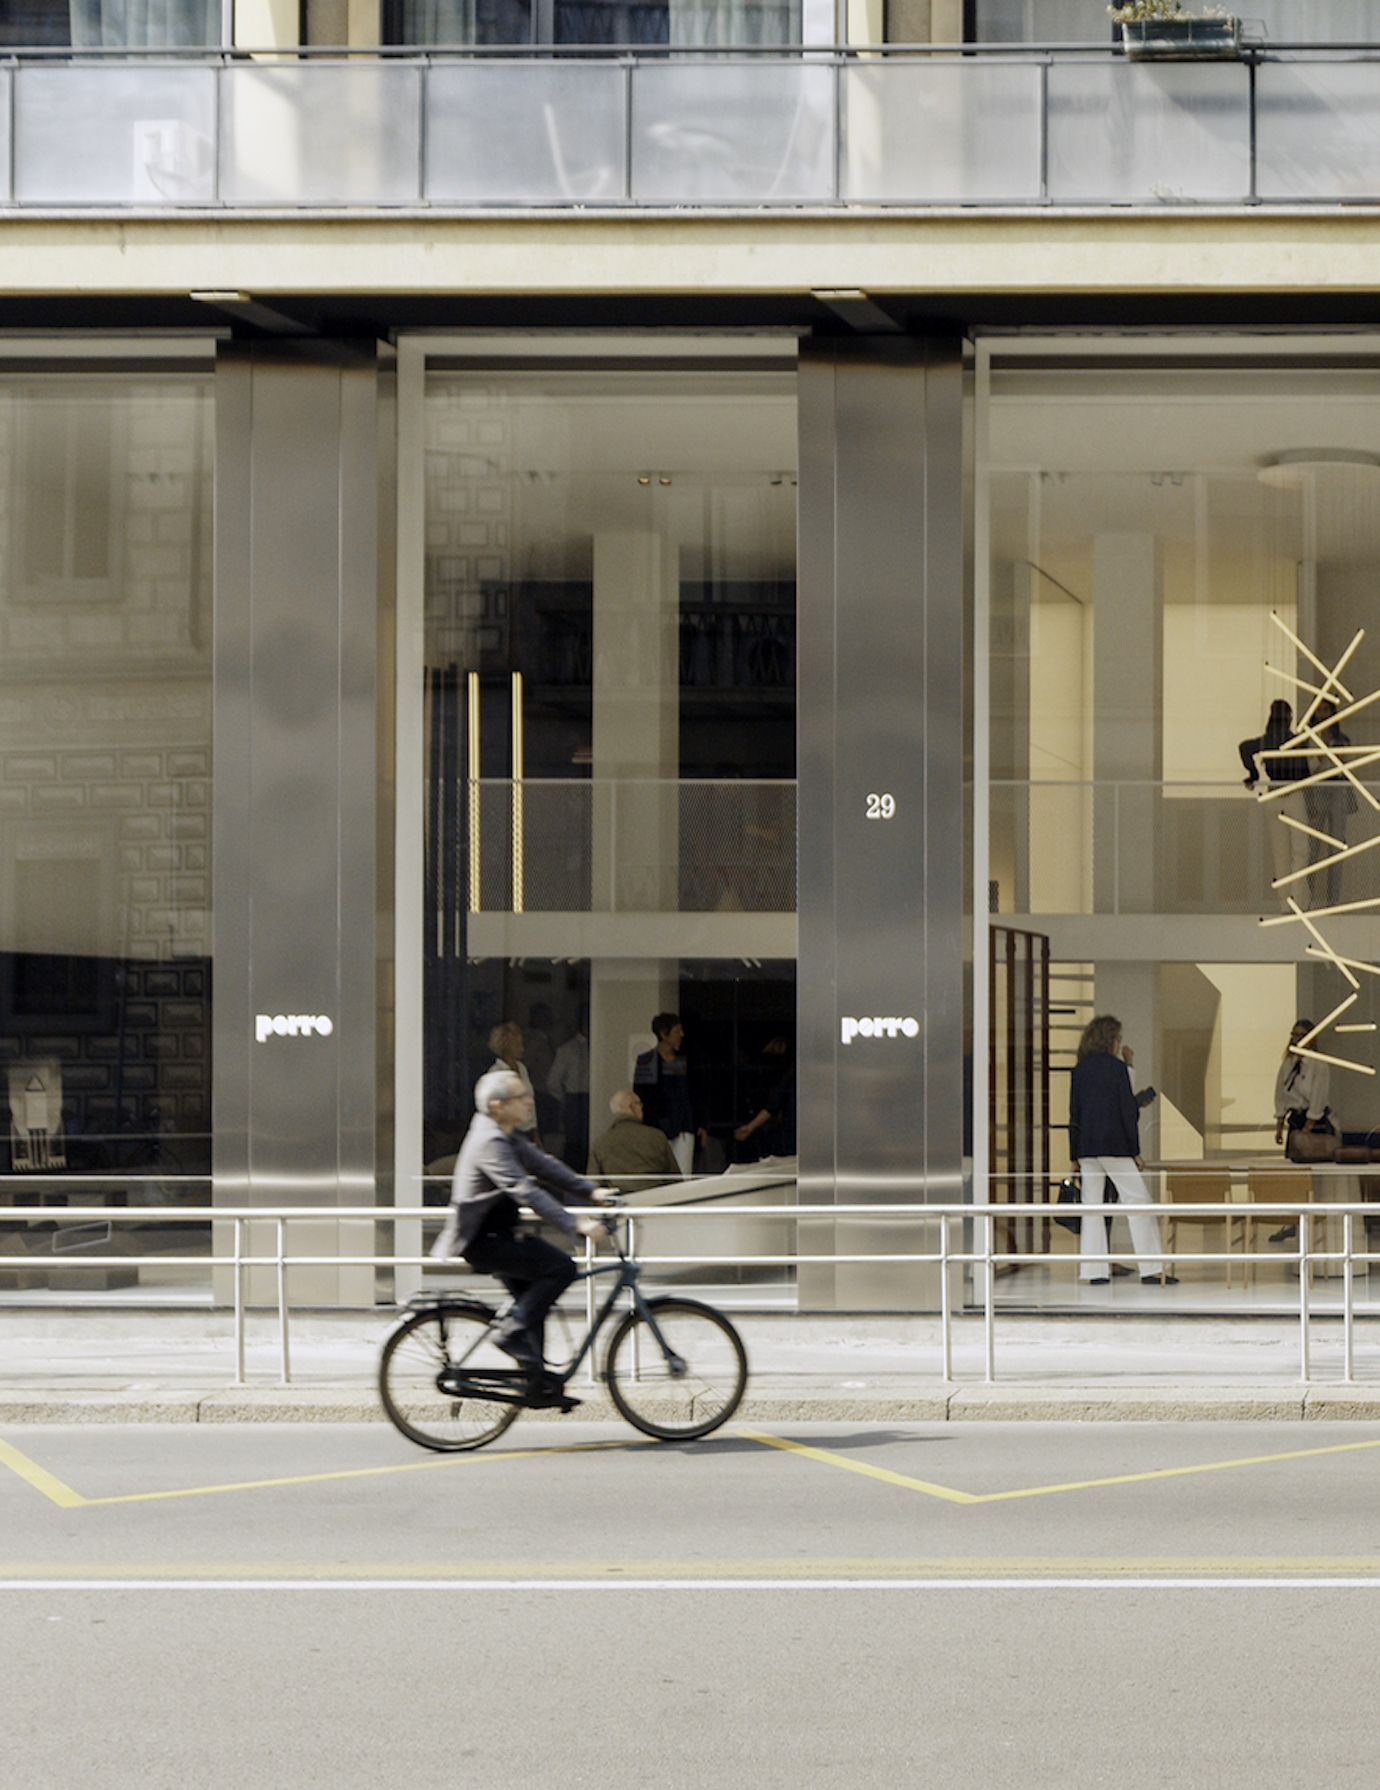 建筑与设计的白盒子
建筑师Piero Lissoni焕新Porro米兰空间